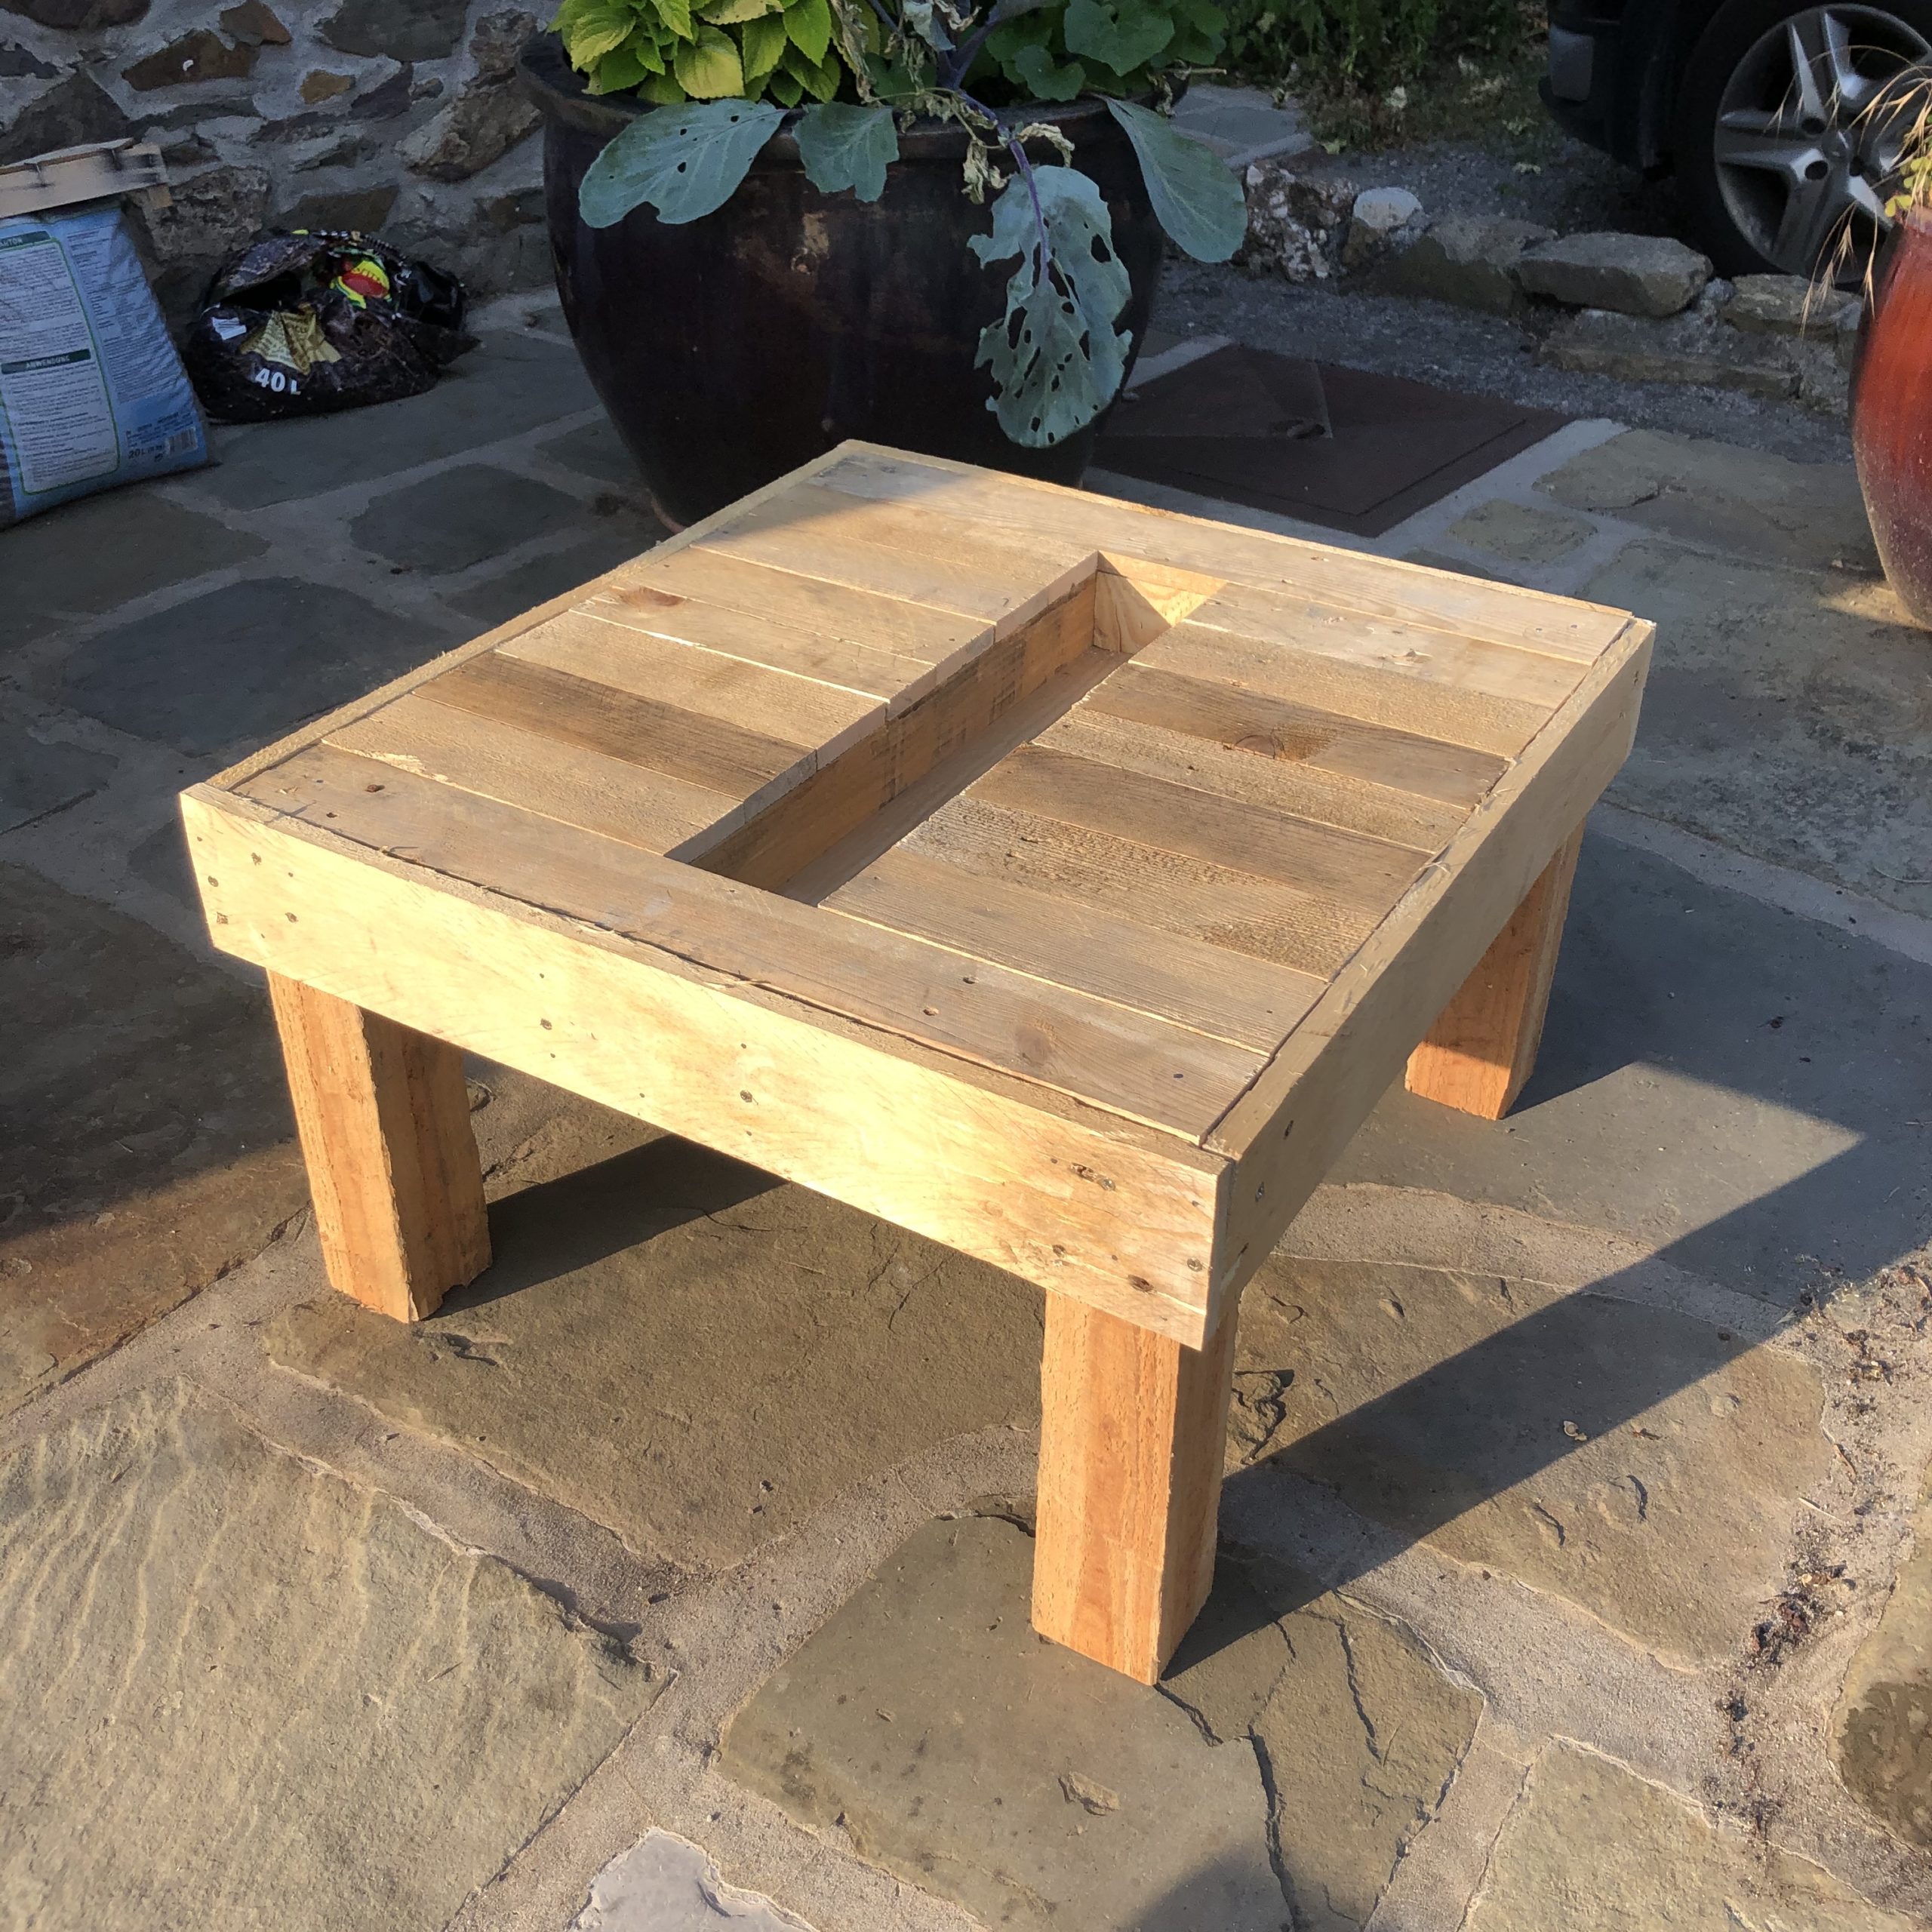 Jigsaw Table (Keep it Simple) / Table de scie sauteuse (simpliste)   Atelier du Bricoleur (menuiserie)…..…… Woodworking Hobbyist's Workshop